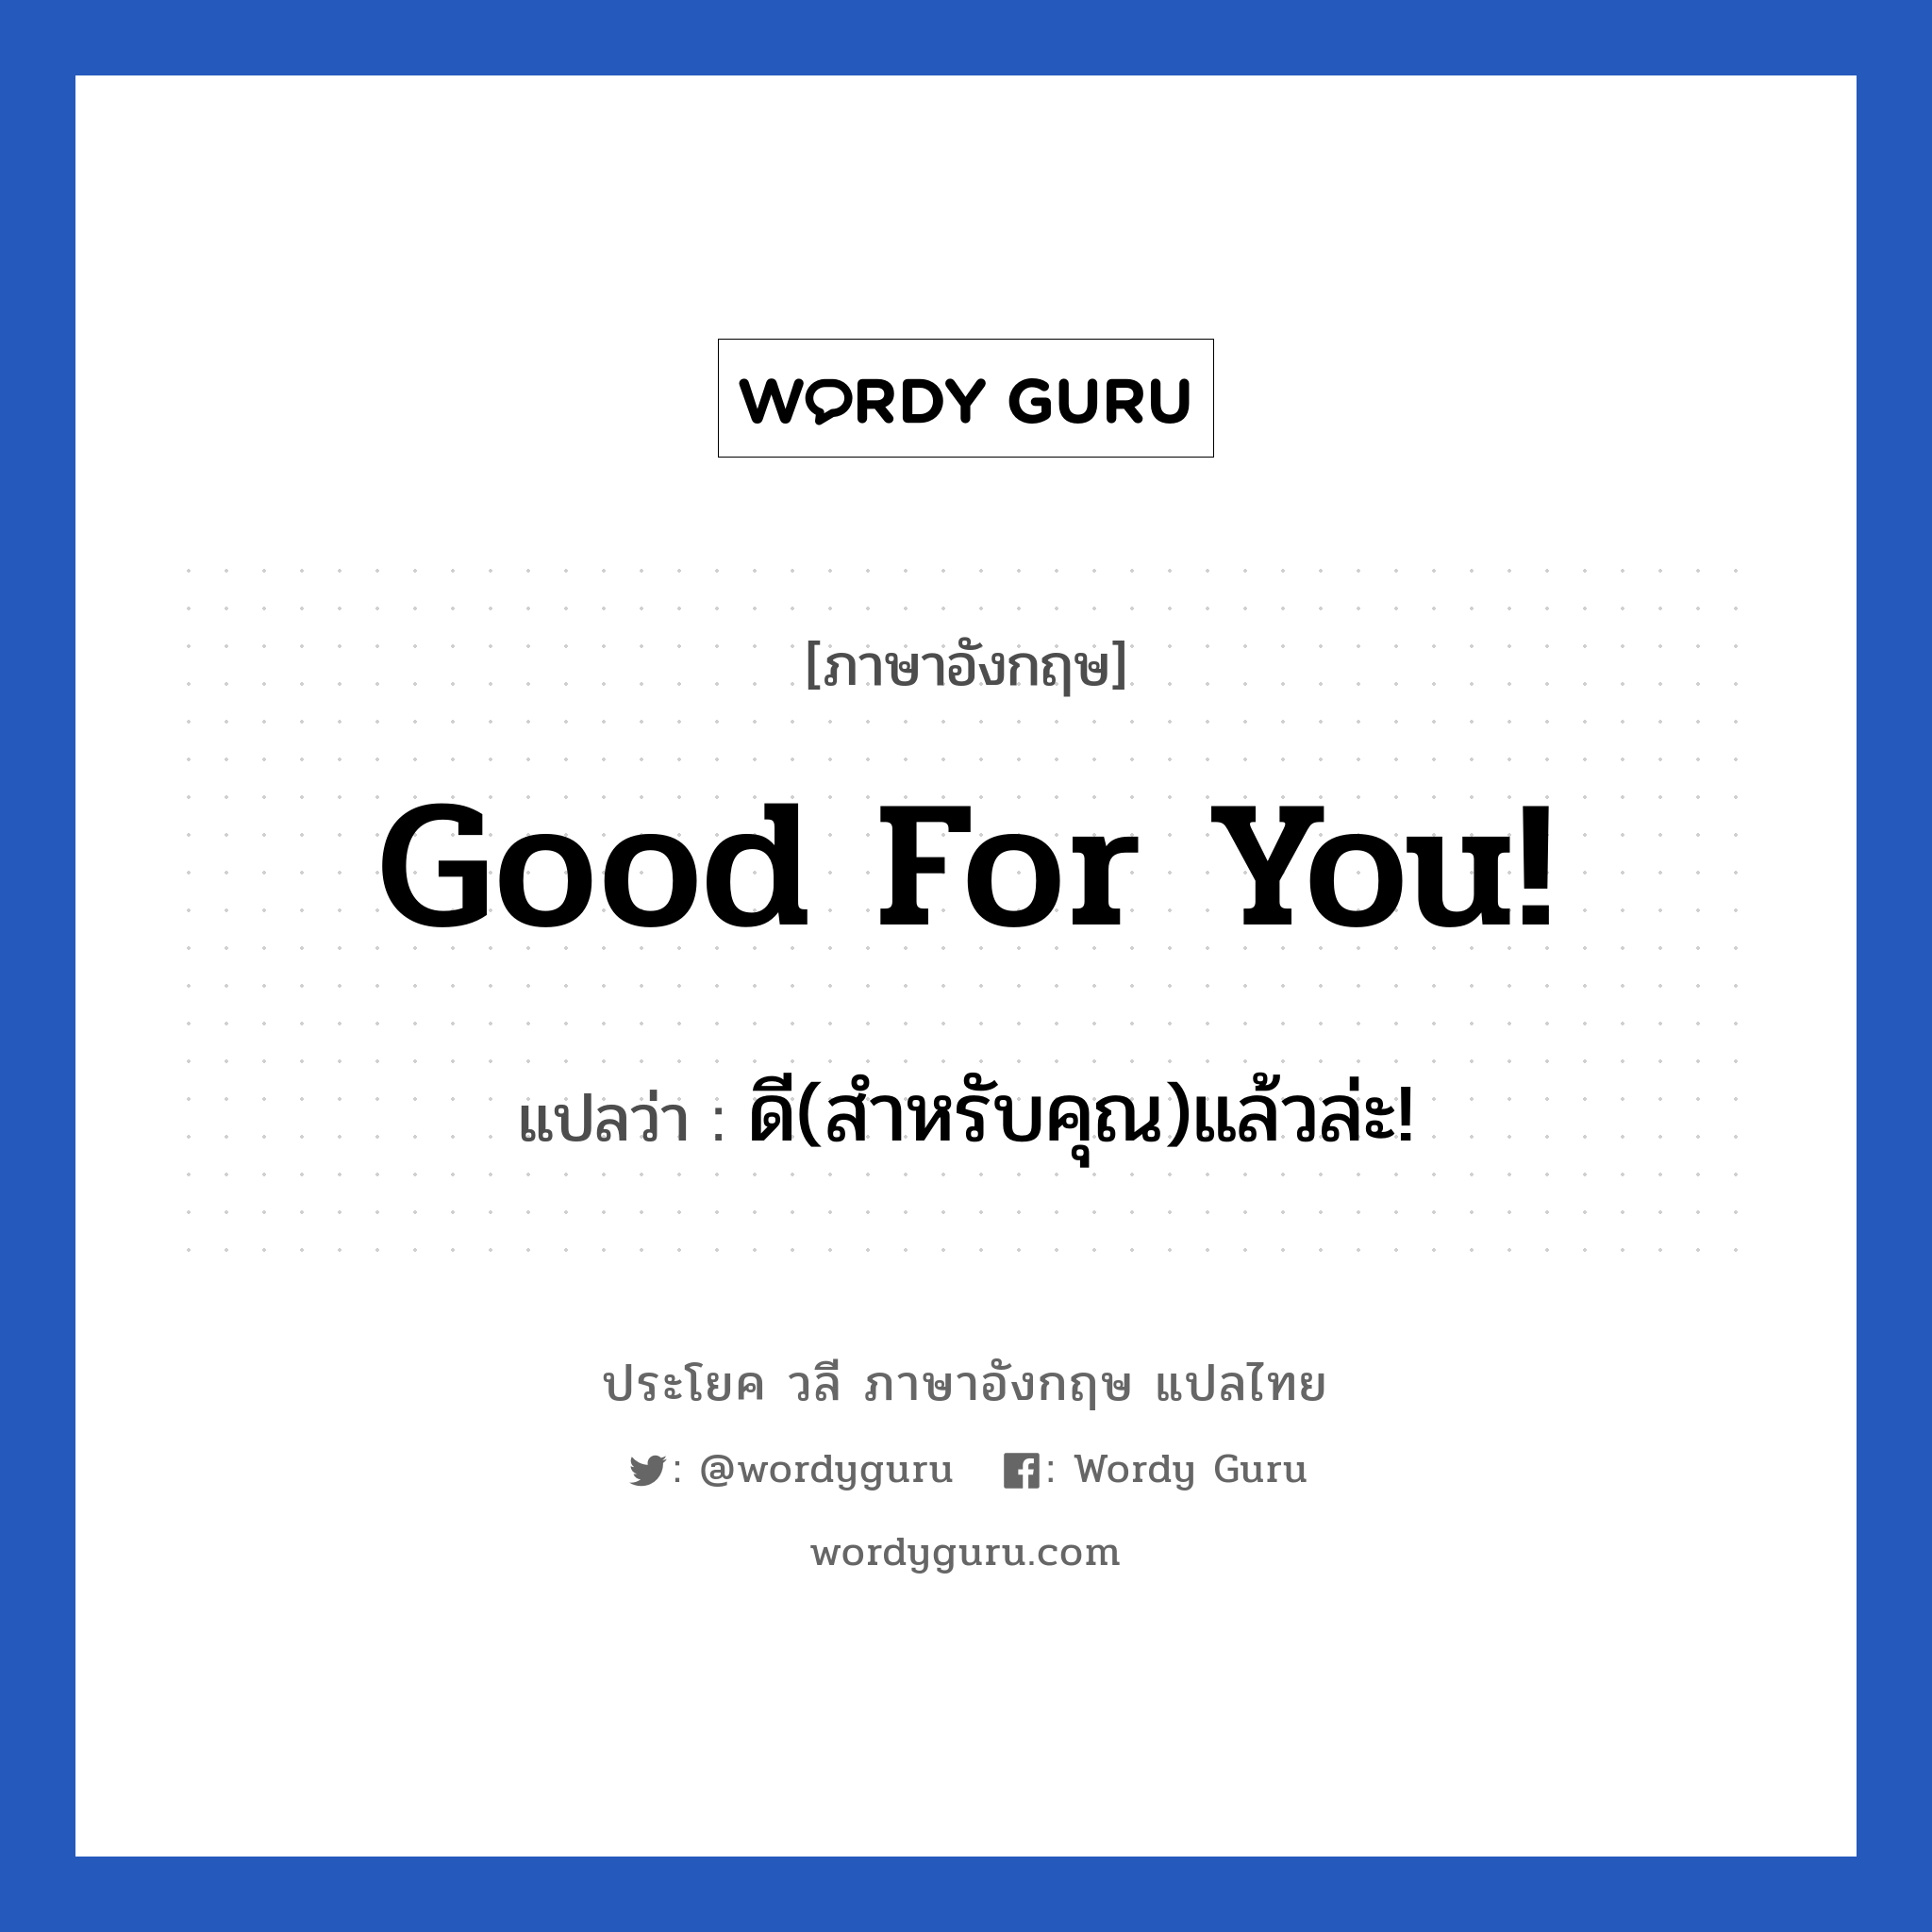 ดี(สำหรับคุณ)แล้วล่ะ! ภาษาอังกฤษ?, วลีภาษาอังกฤษ ดี(สำหรับคุณ)แล้วล่ะ! แปลว่า Good for you!